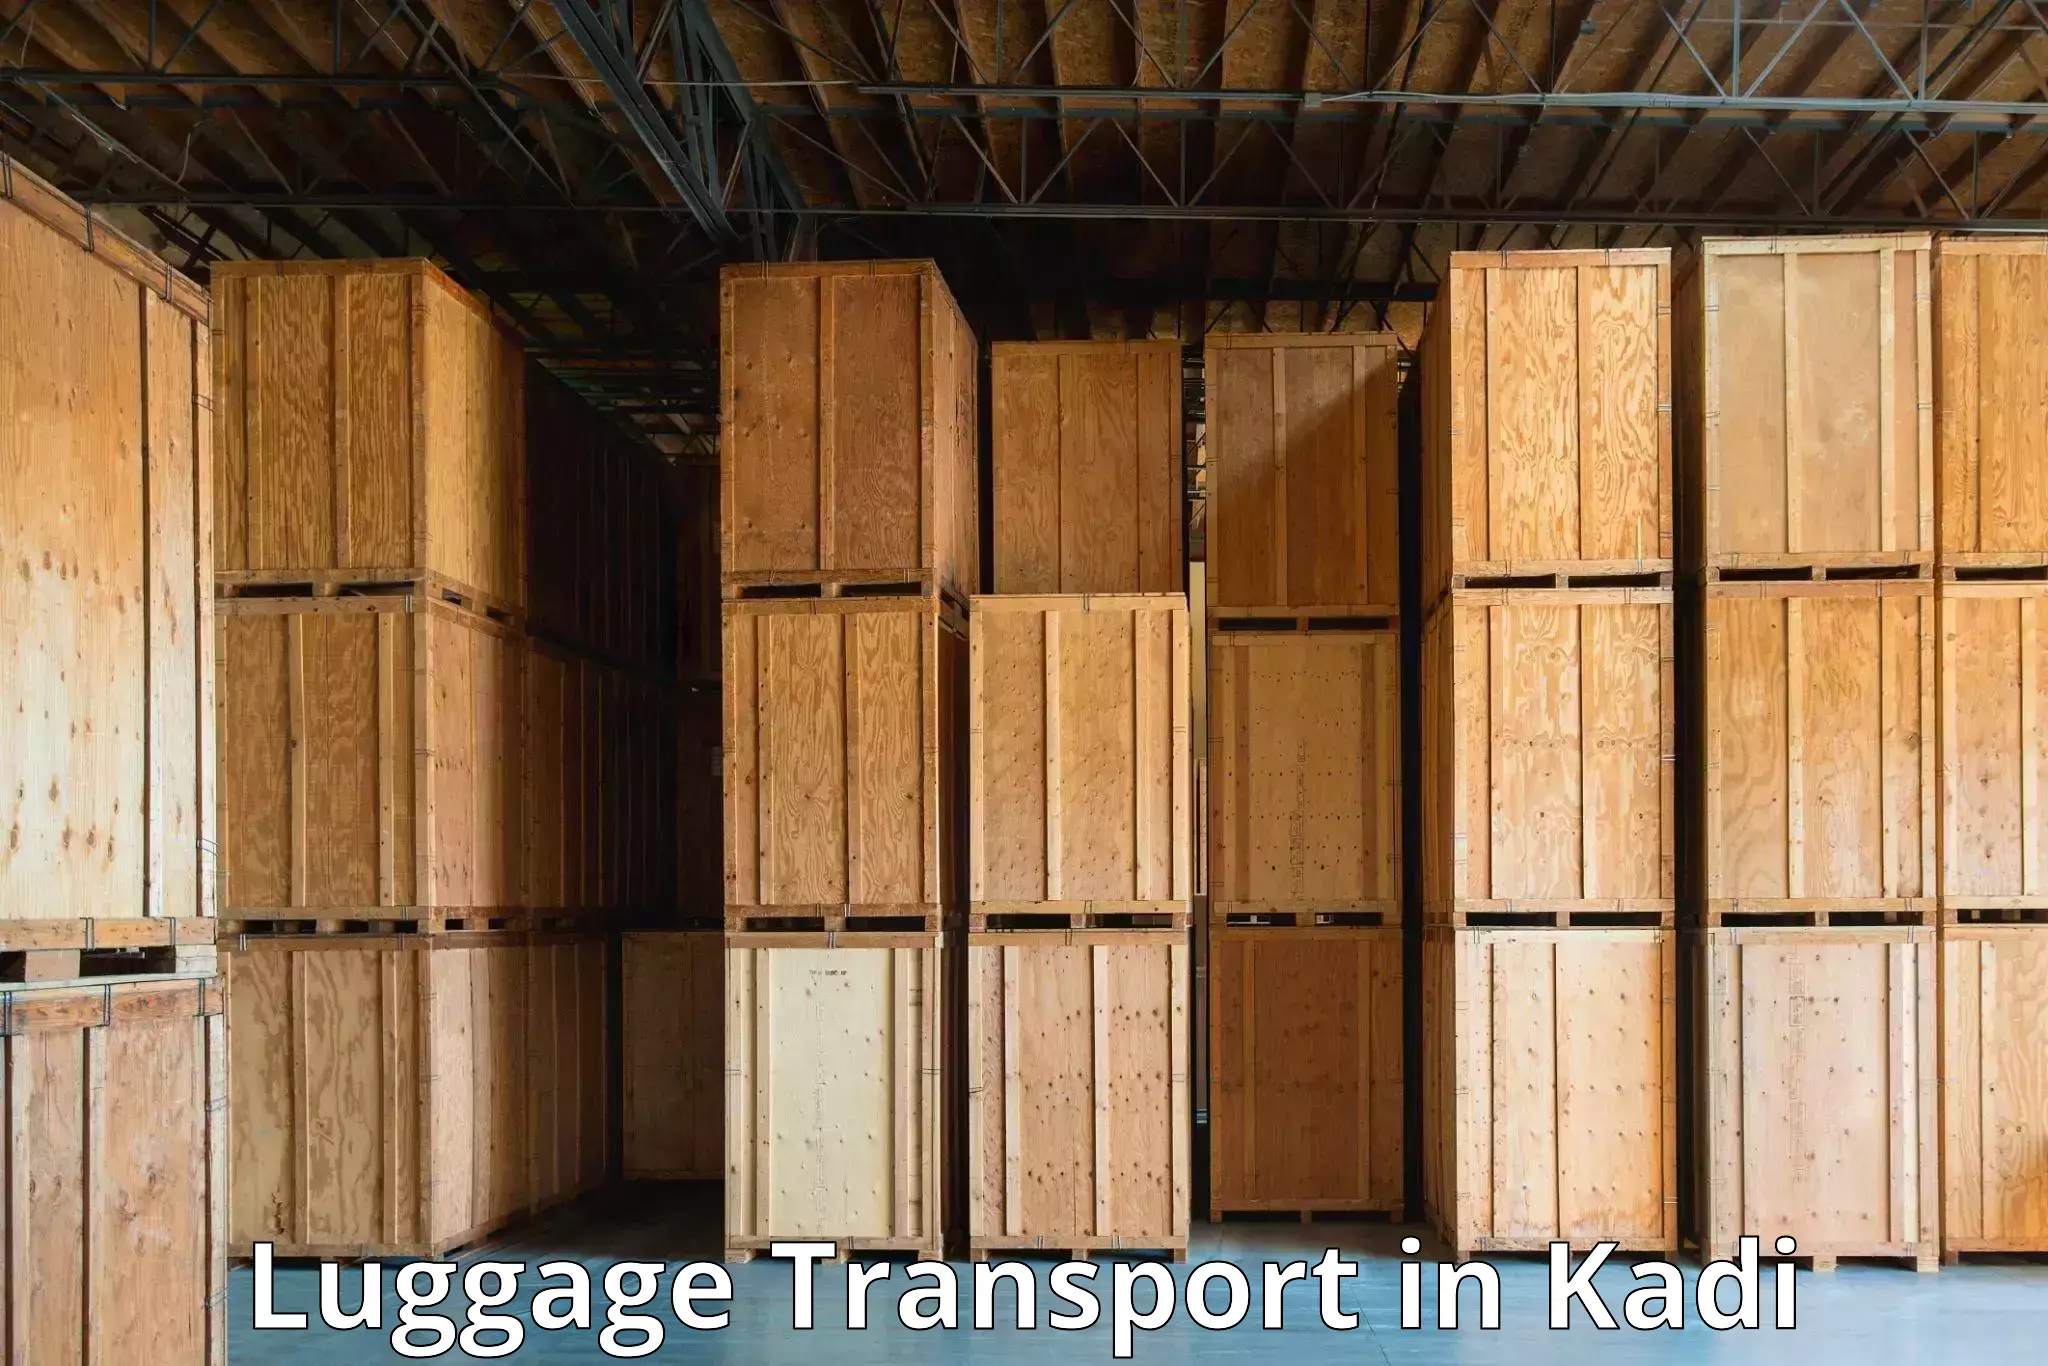 Luggage transport rates calculator in Kadi